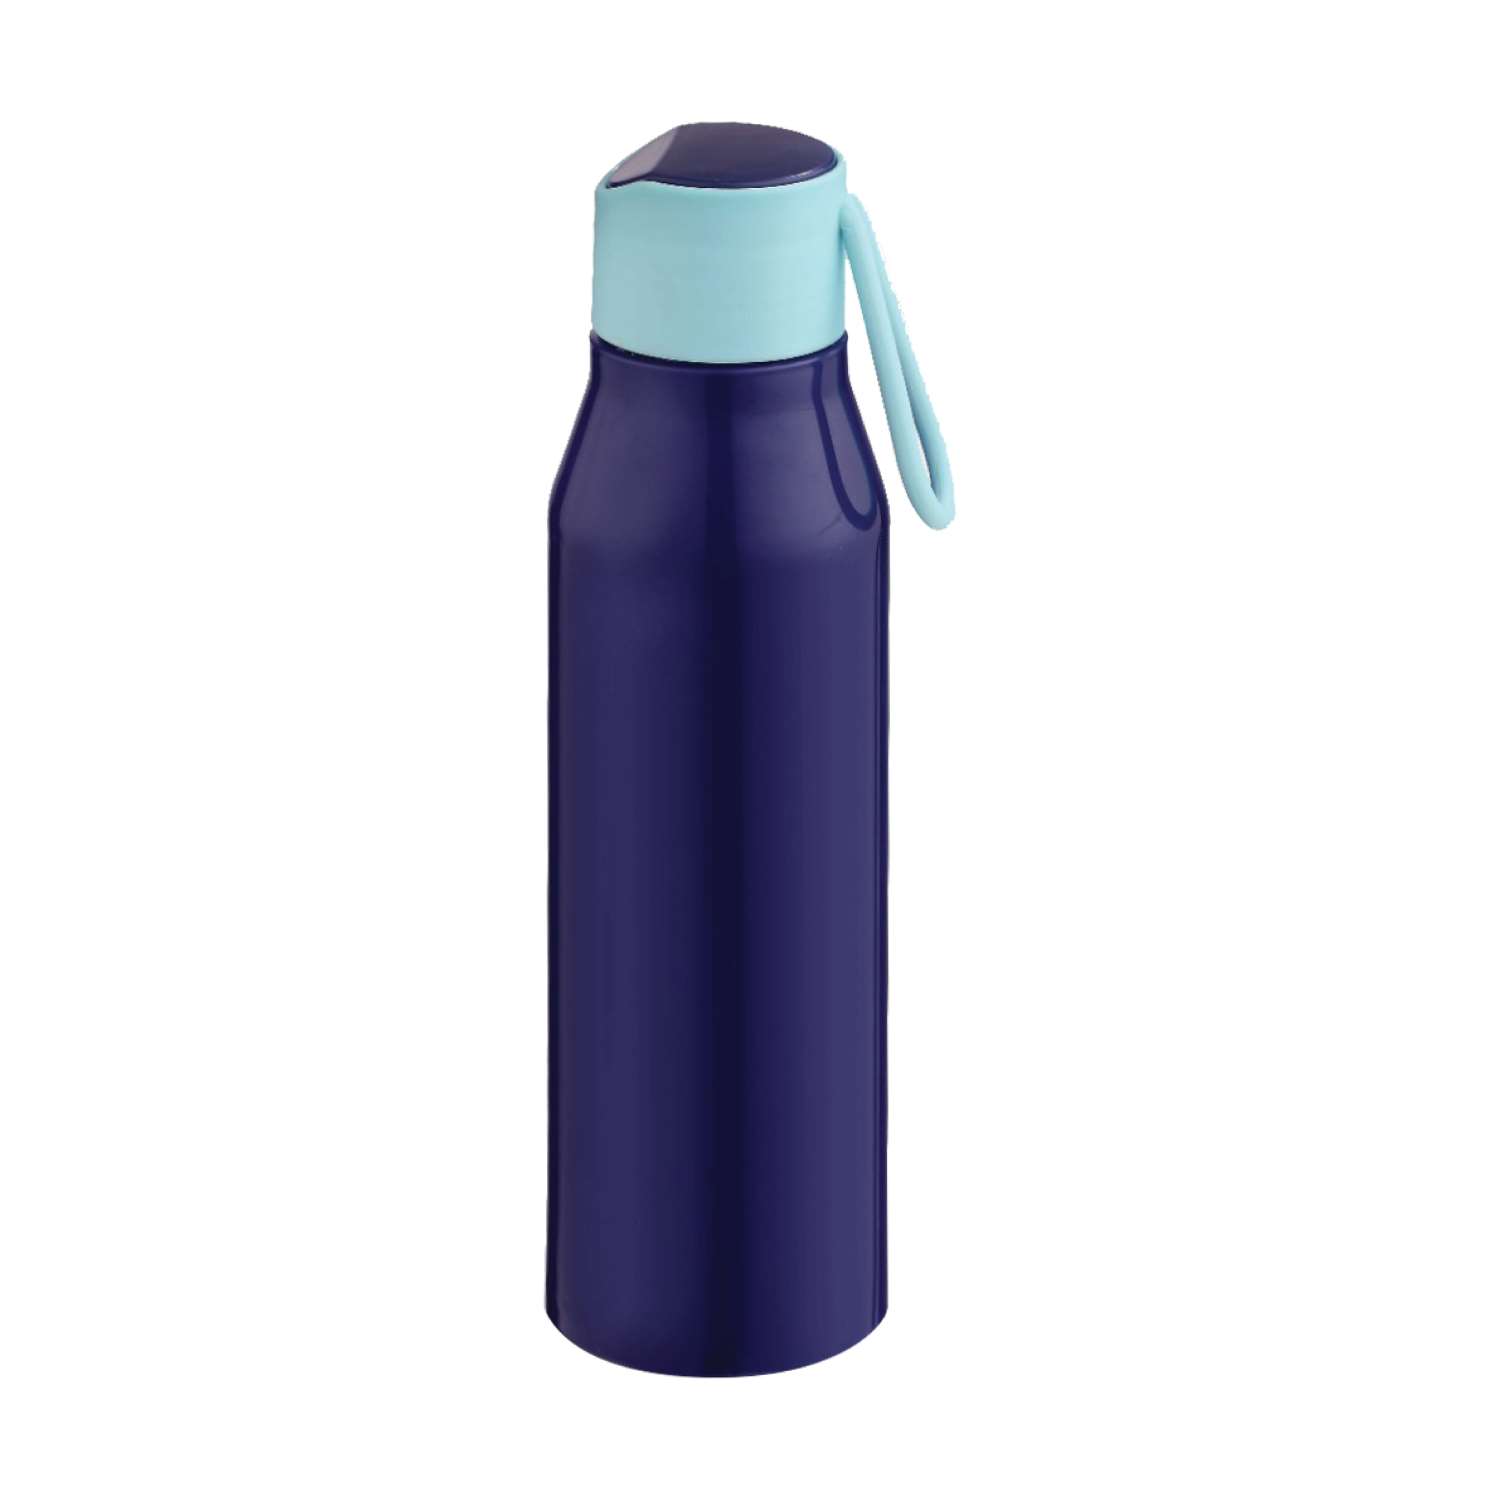 Selvel Bolt Plastic Water Bottle Blue 700Ml